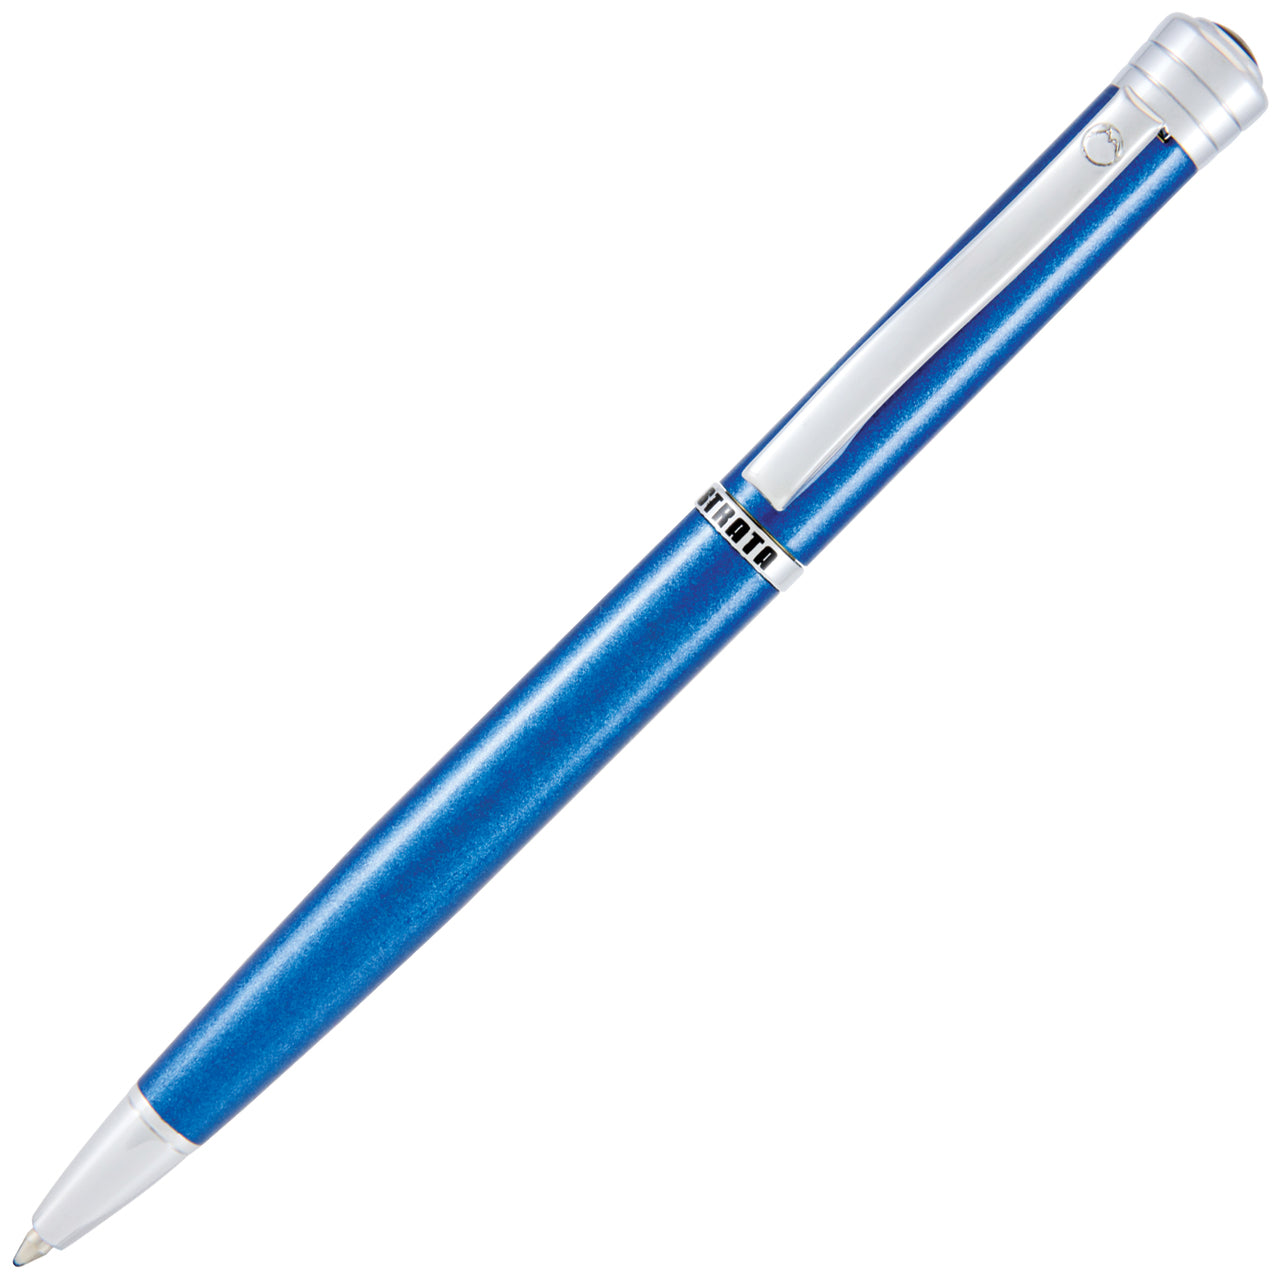 Monteverde Strata Blue Ballpoint Pen | Pen Store | Pen Place Since 1968